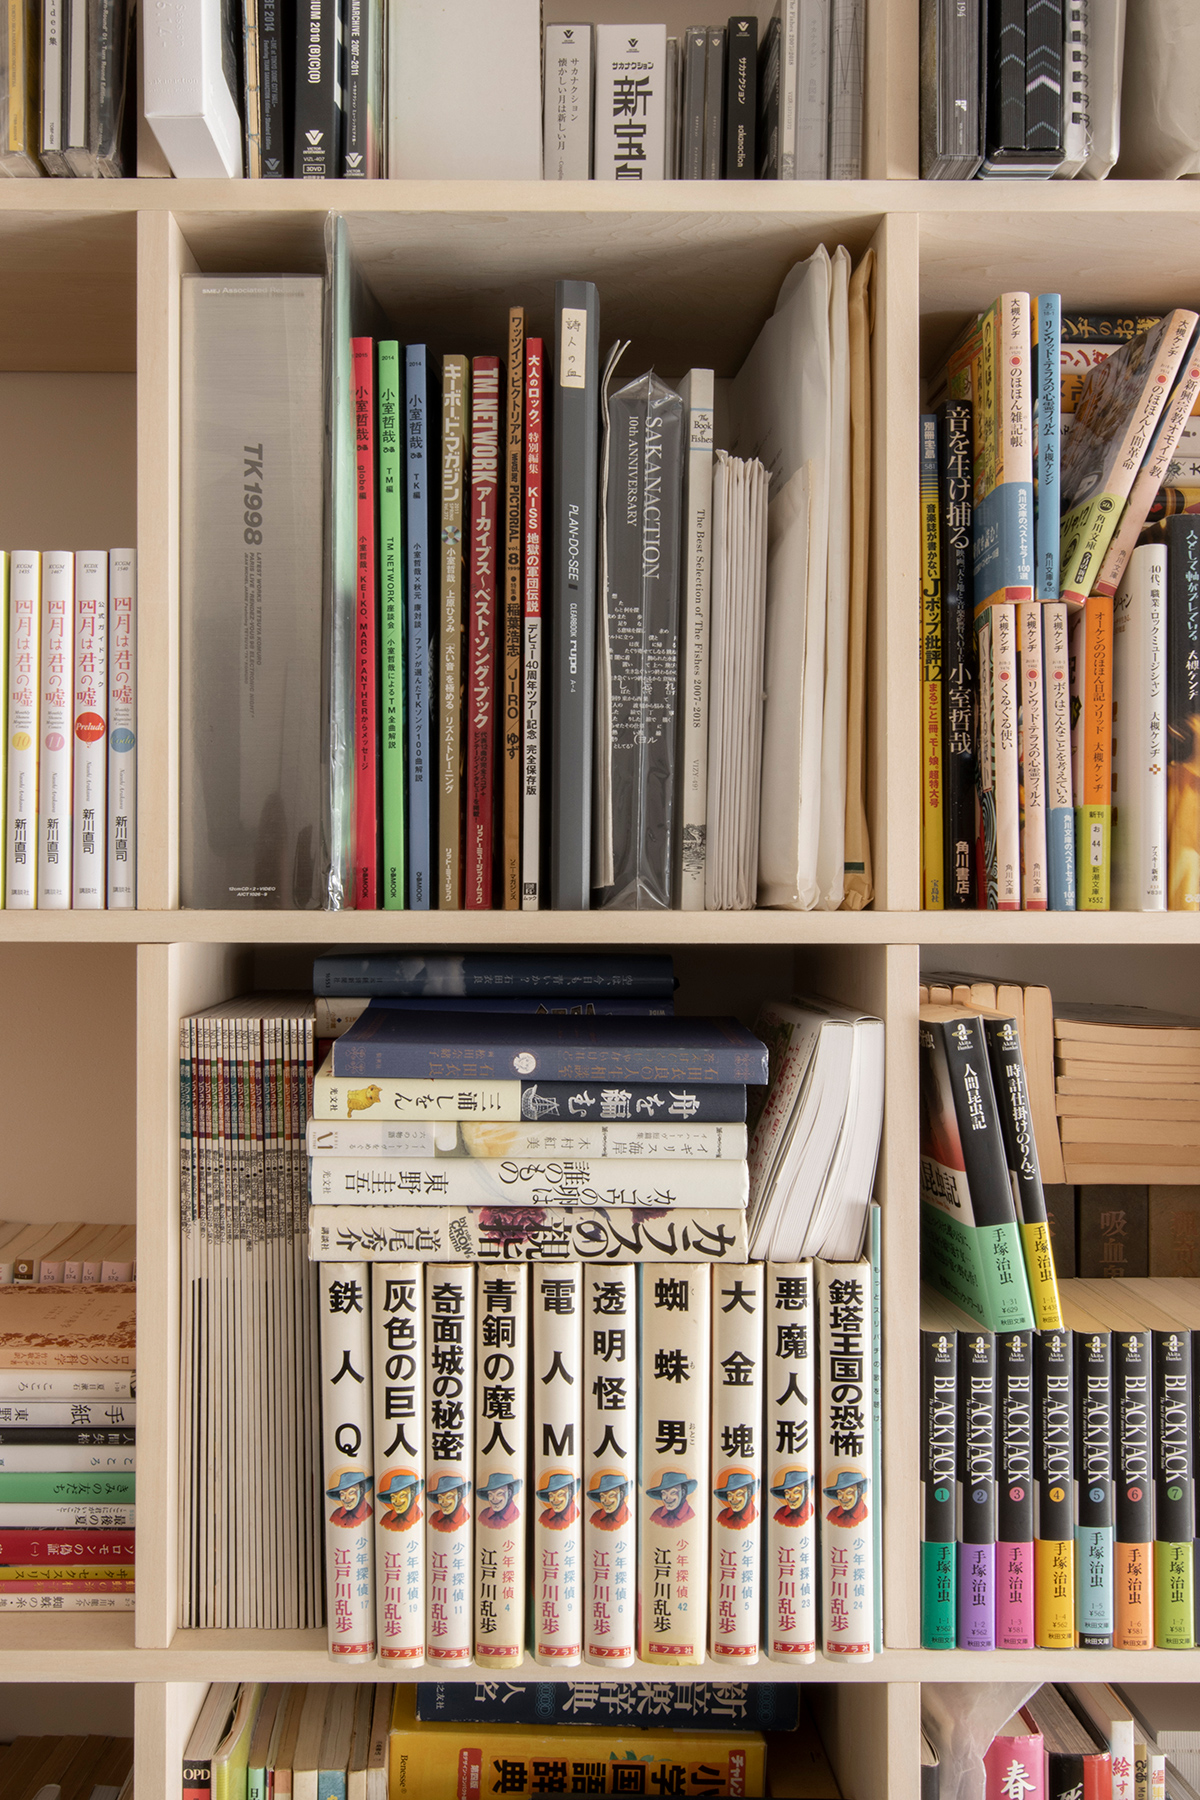 本棚に合わせて生活空間をリフォーム
壁一面の本棚